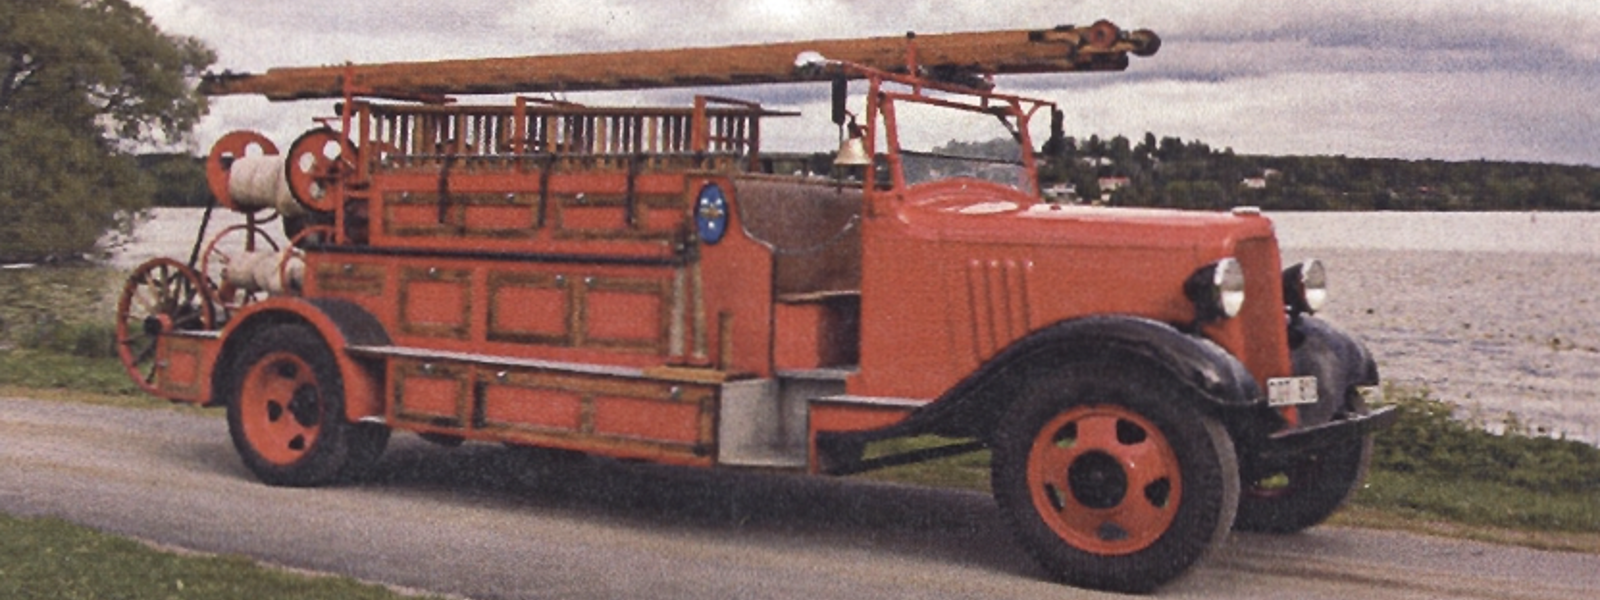 Sigtunas första brandbil